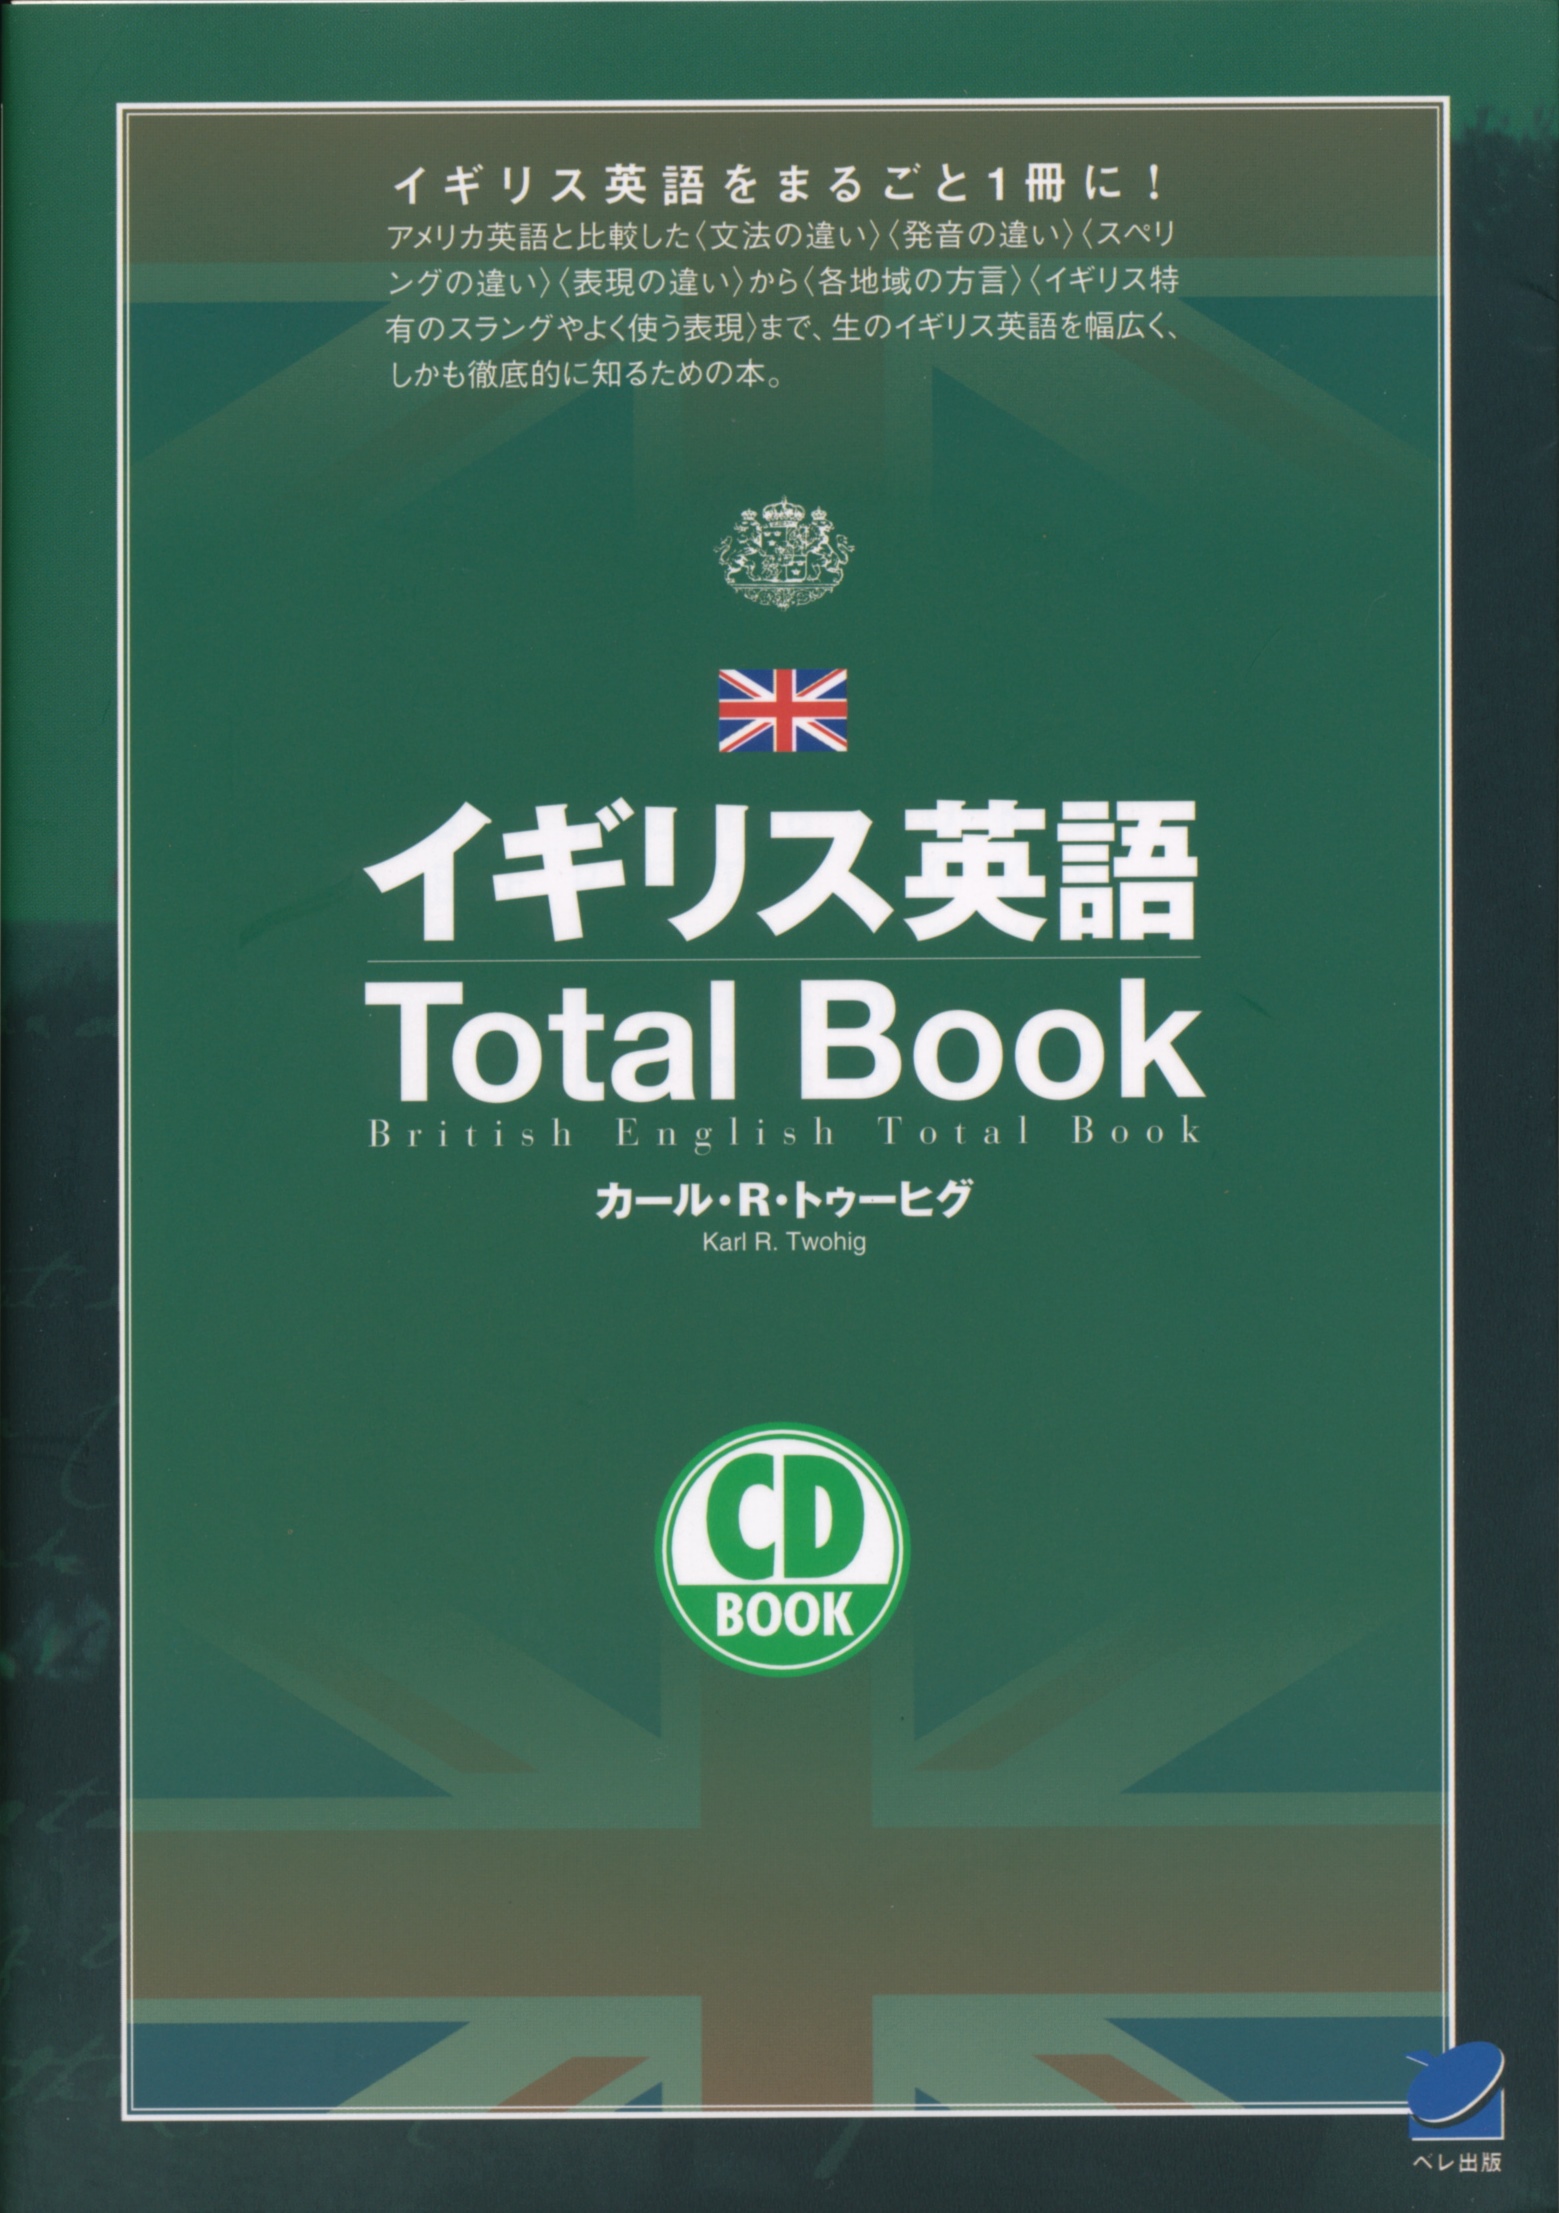 イギリス英語Total Book CD BOOK - いつも、学ぶ人の近くに【ベレ出版】